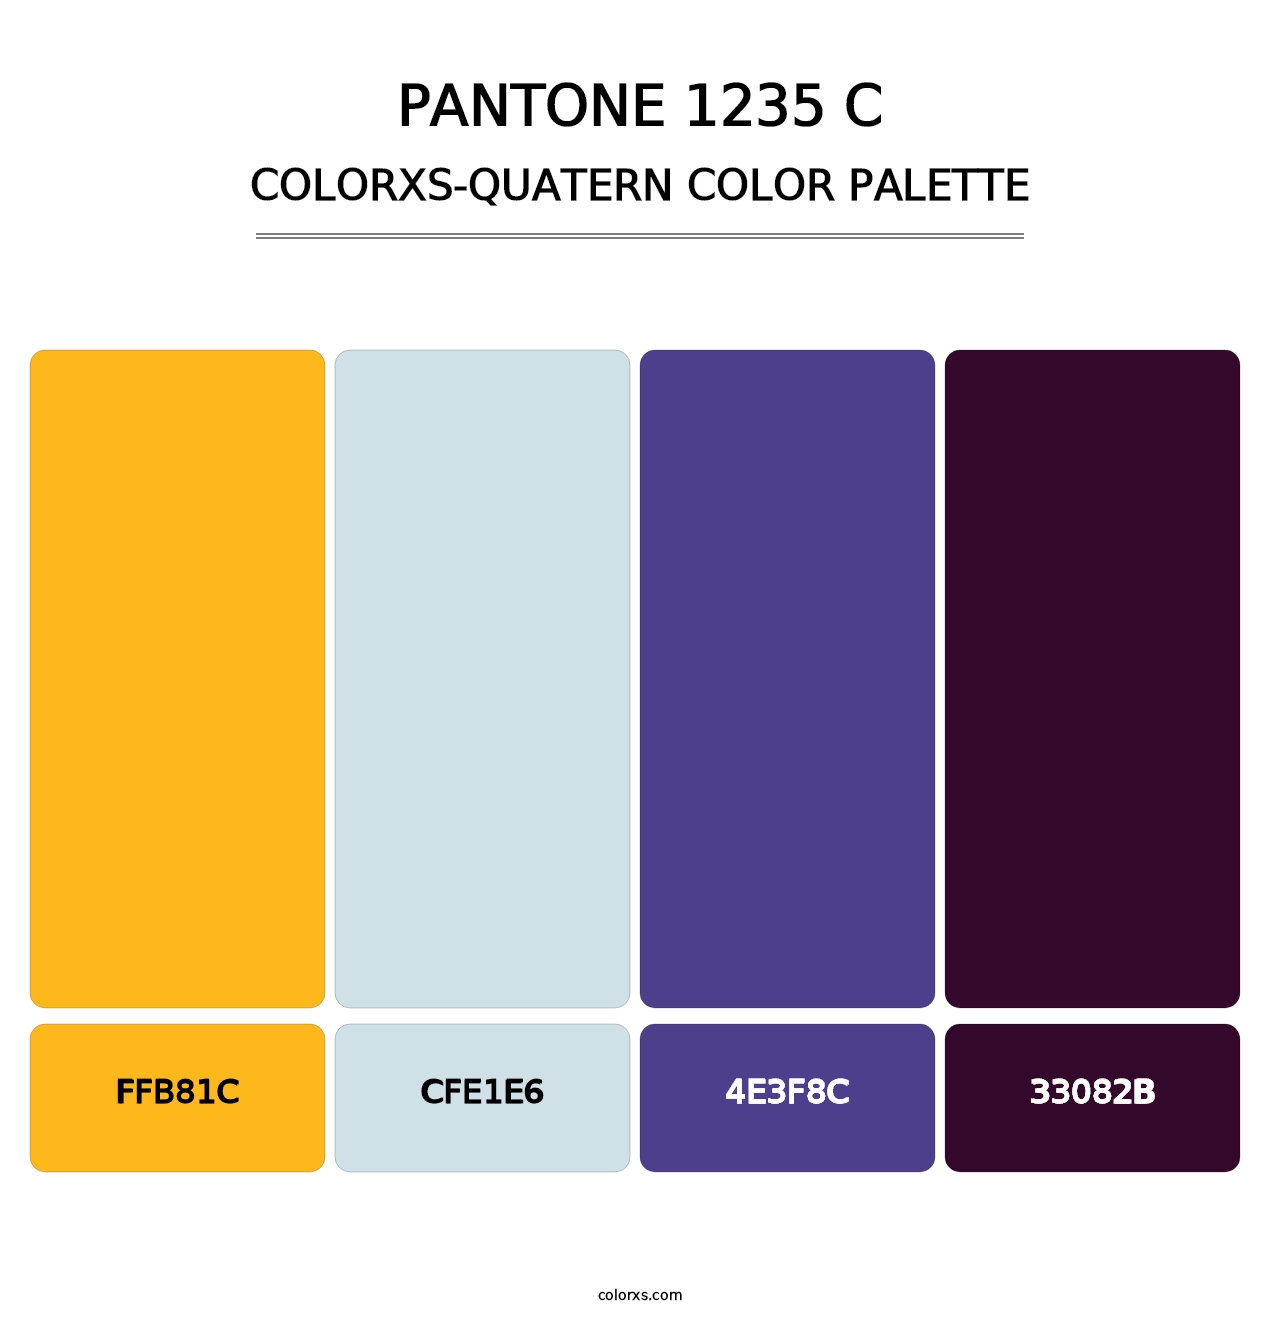 PANTONE 1235 C - Colorxs Quatern Palette